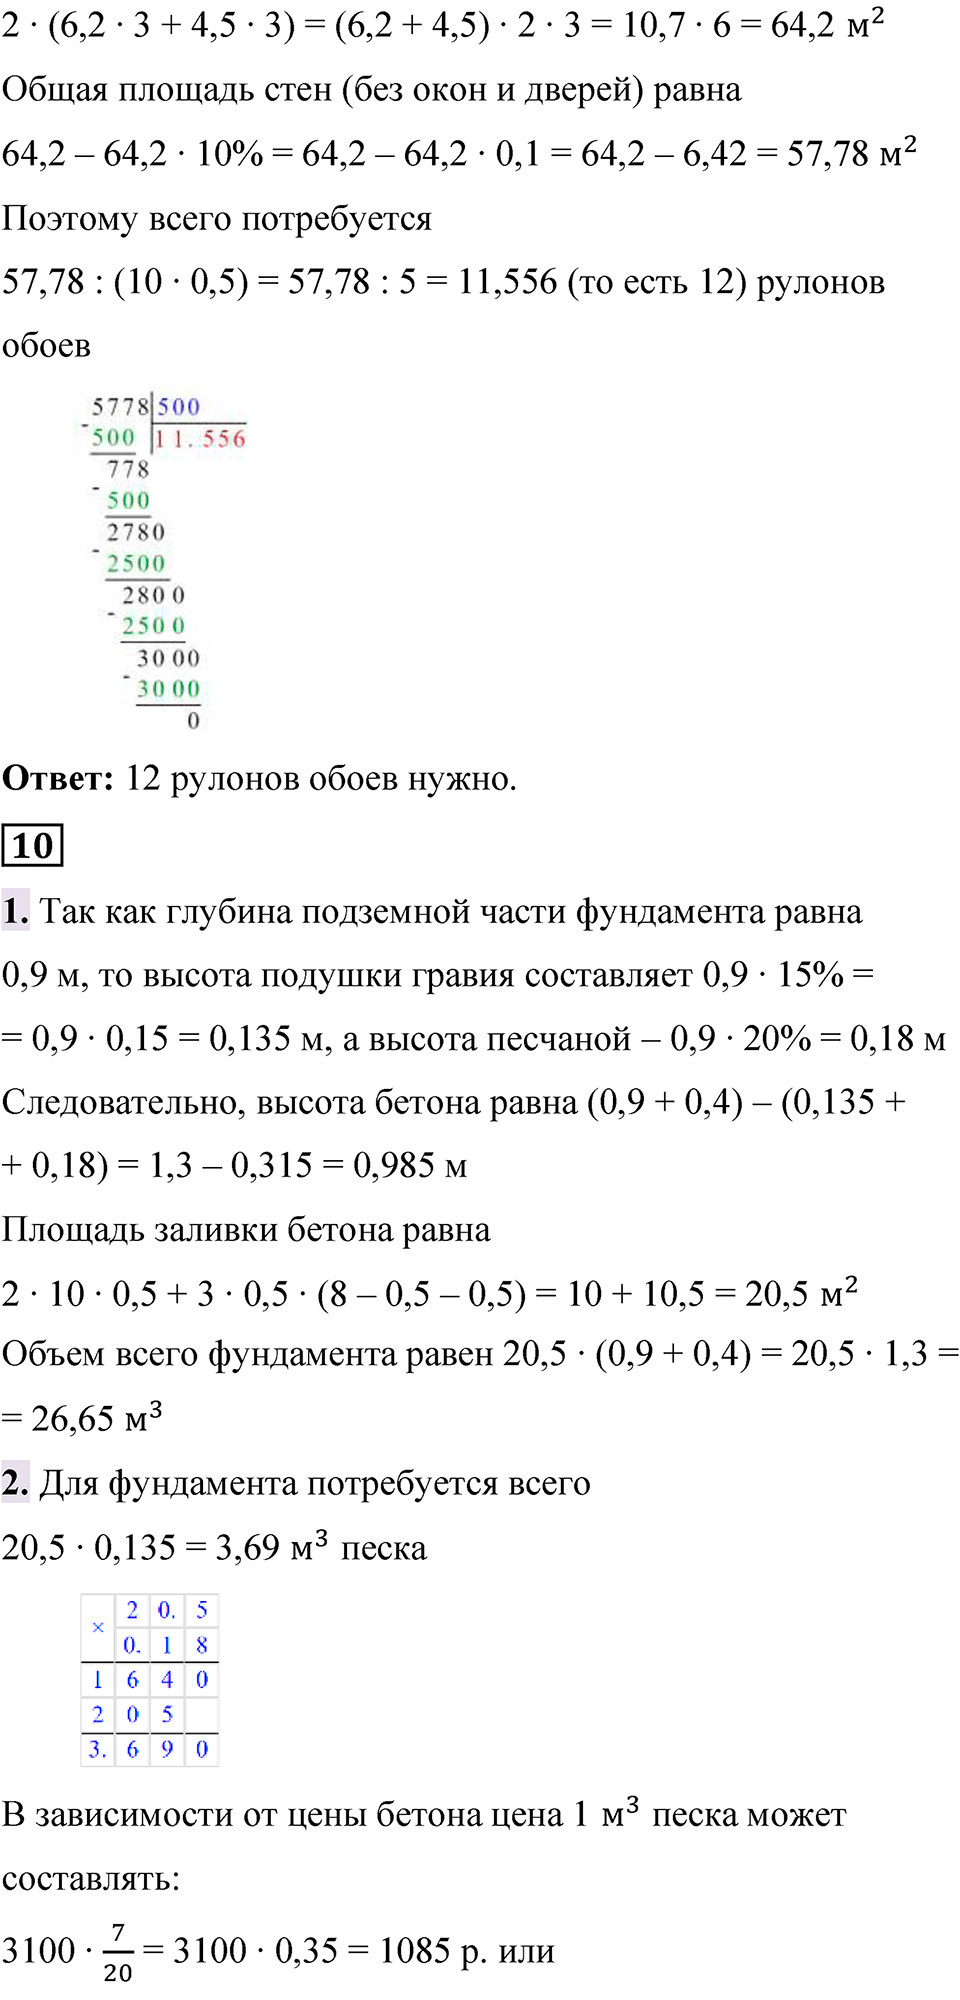 страница 120-123 Применяем математика математика 6 класс Виленкин часть 2 просвещение ФГОС 2023